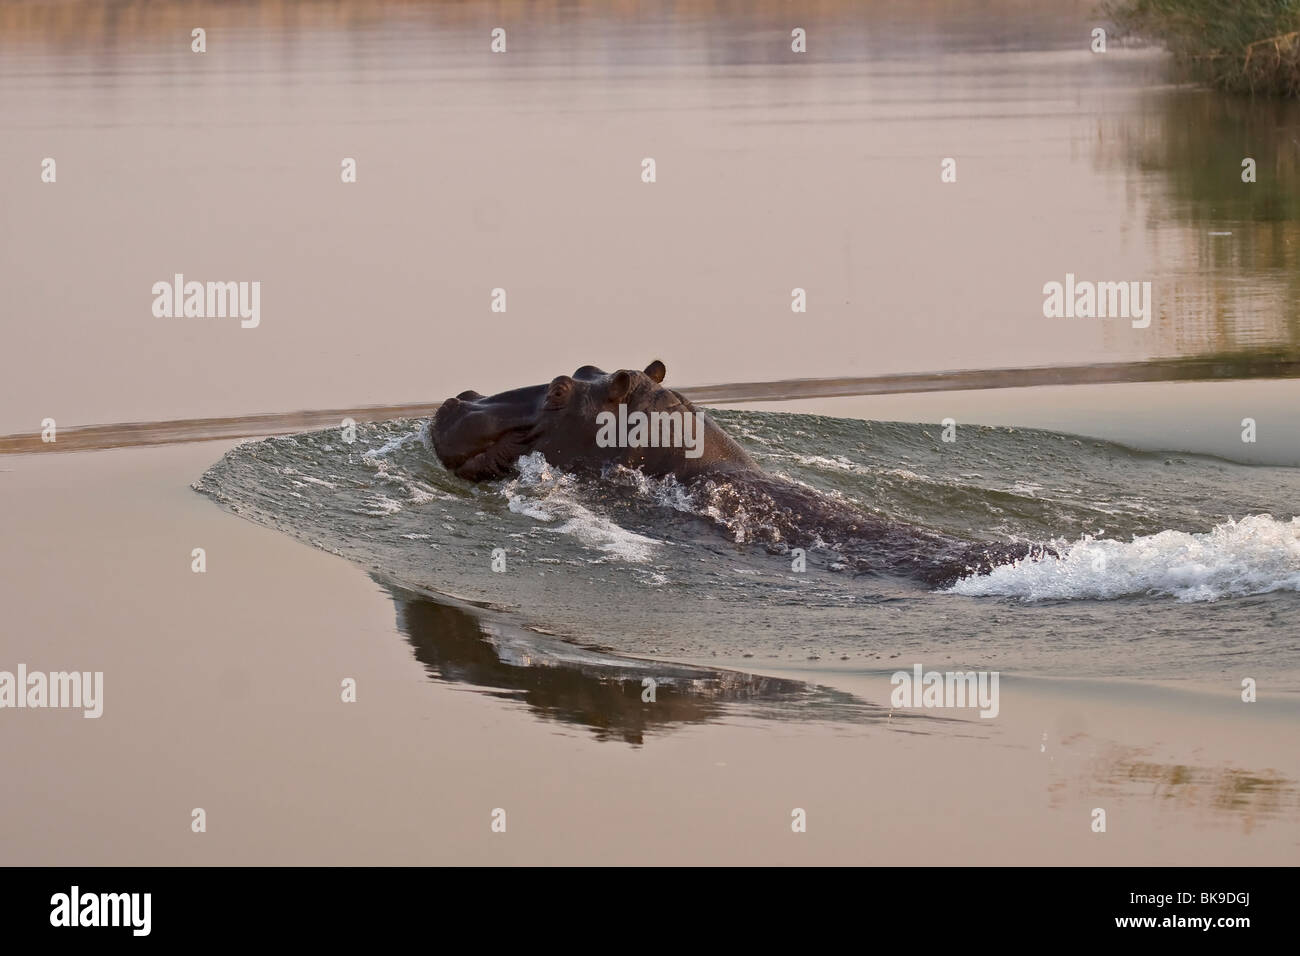 Hippopotamus swimming in the water (Hippopotamus amphibius) Stock Photo